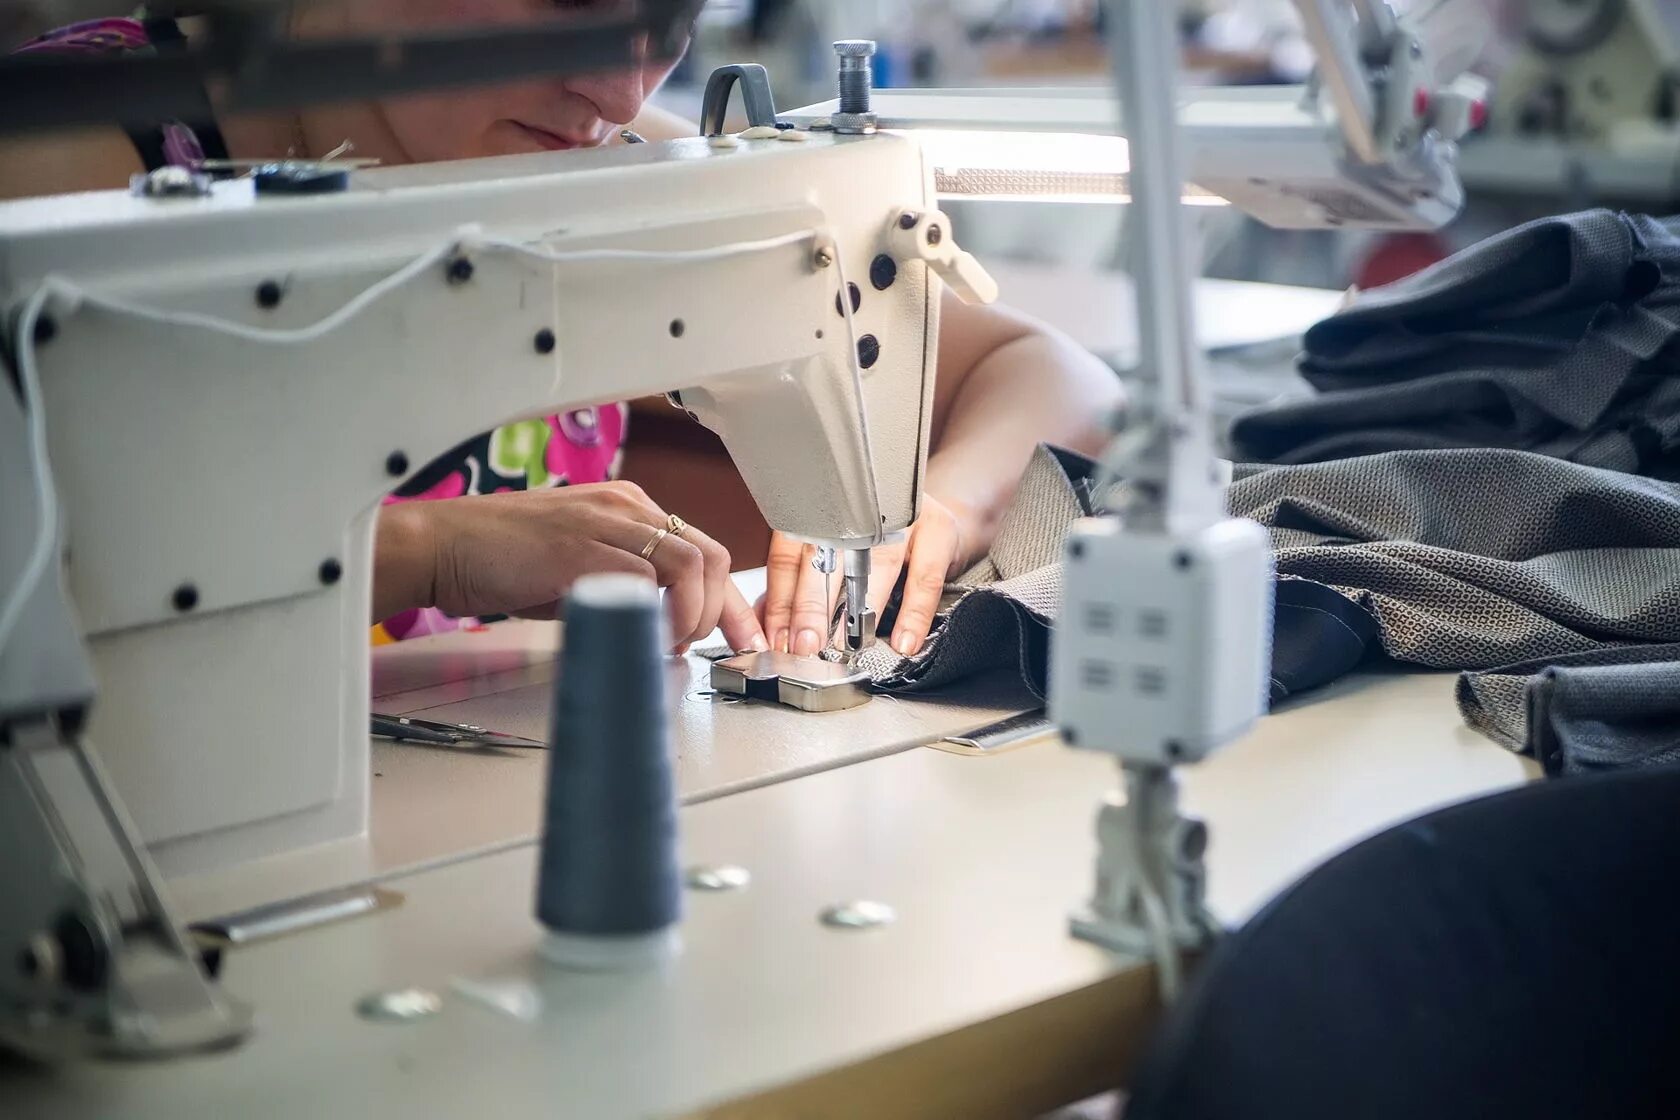 Работа швейной машинки видео. Швея. Швейный цех. Швейные машины на швейной фабрике. Швея шьет.